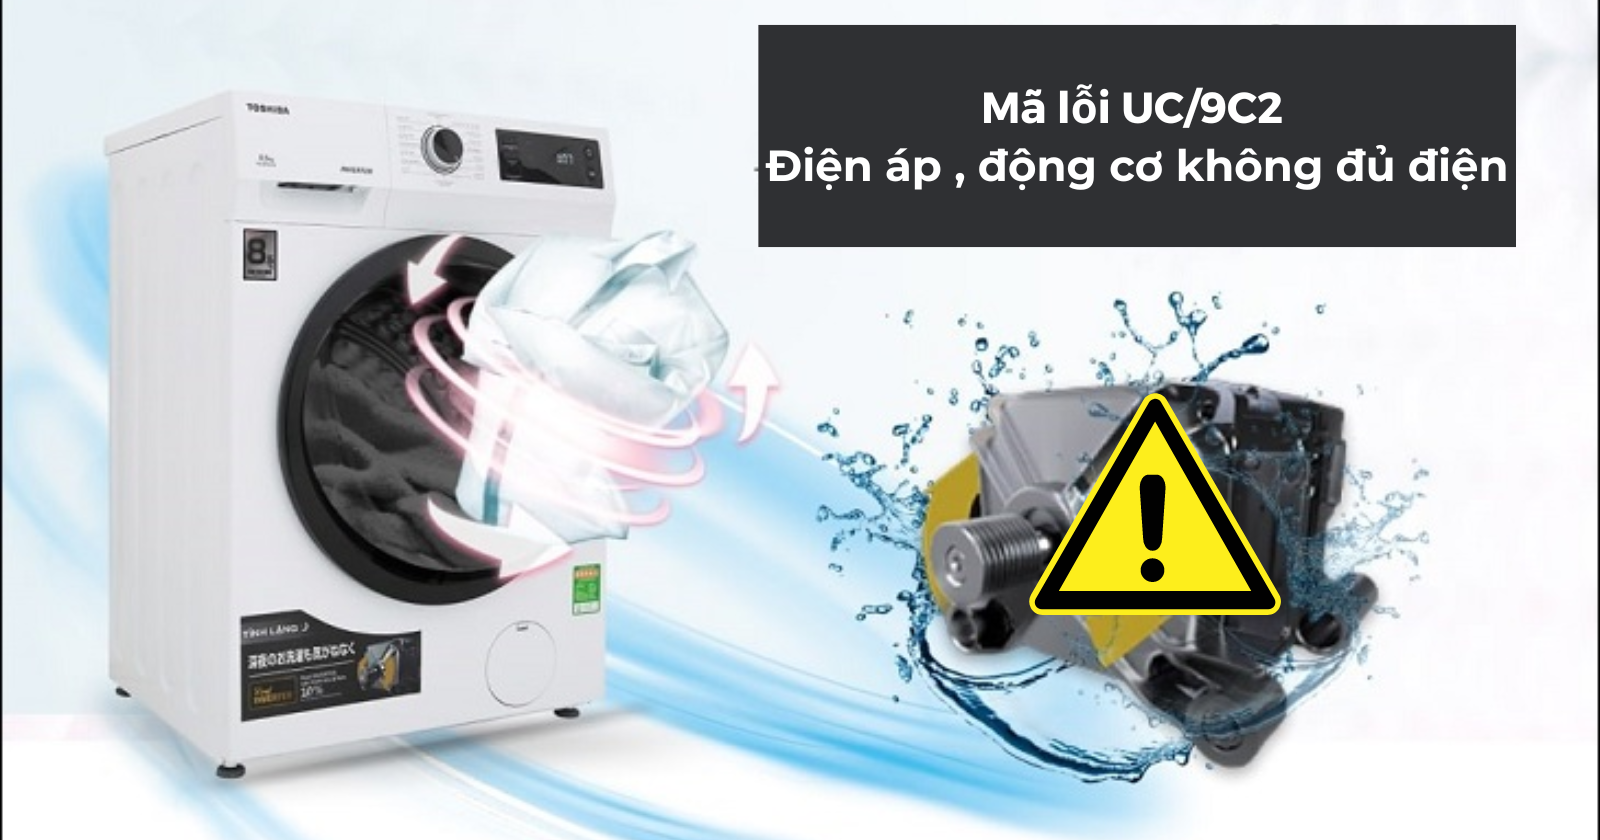 Mã lỗi UC/9C2 – Điện áp không đủ, động cơ không đủ điện 